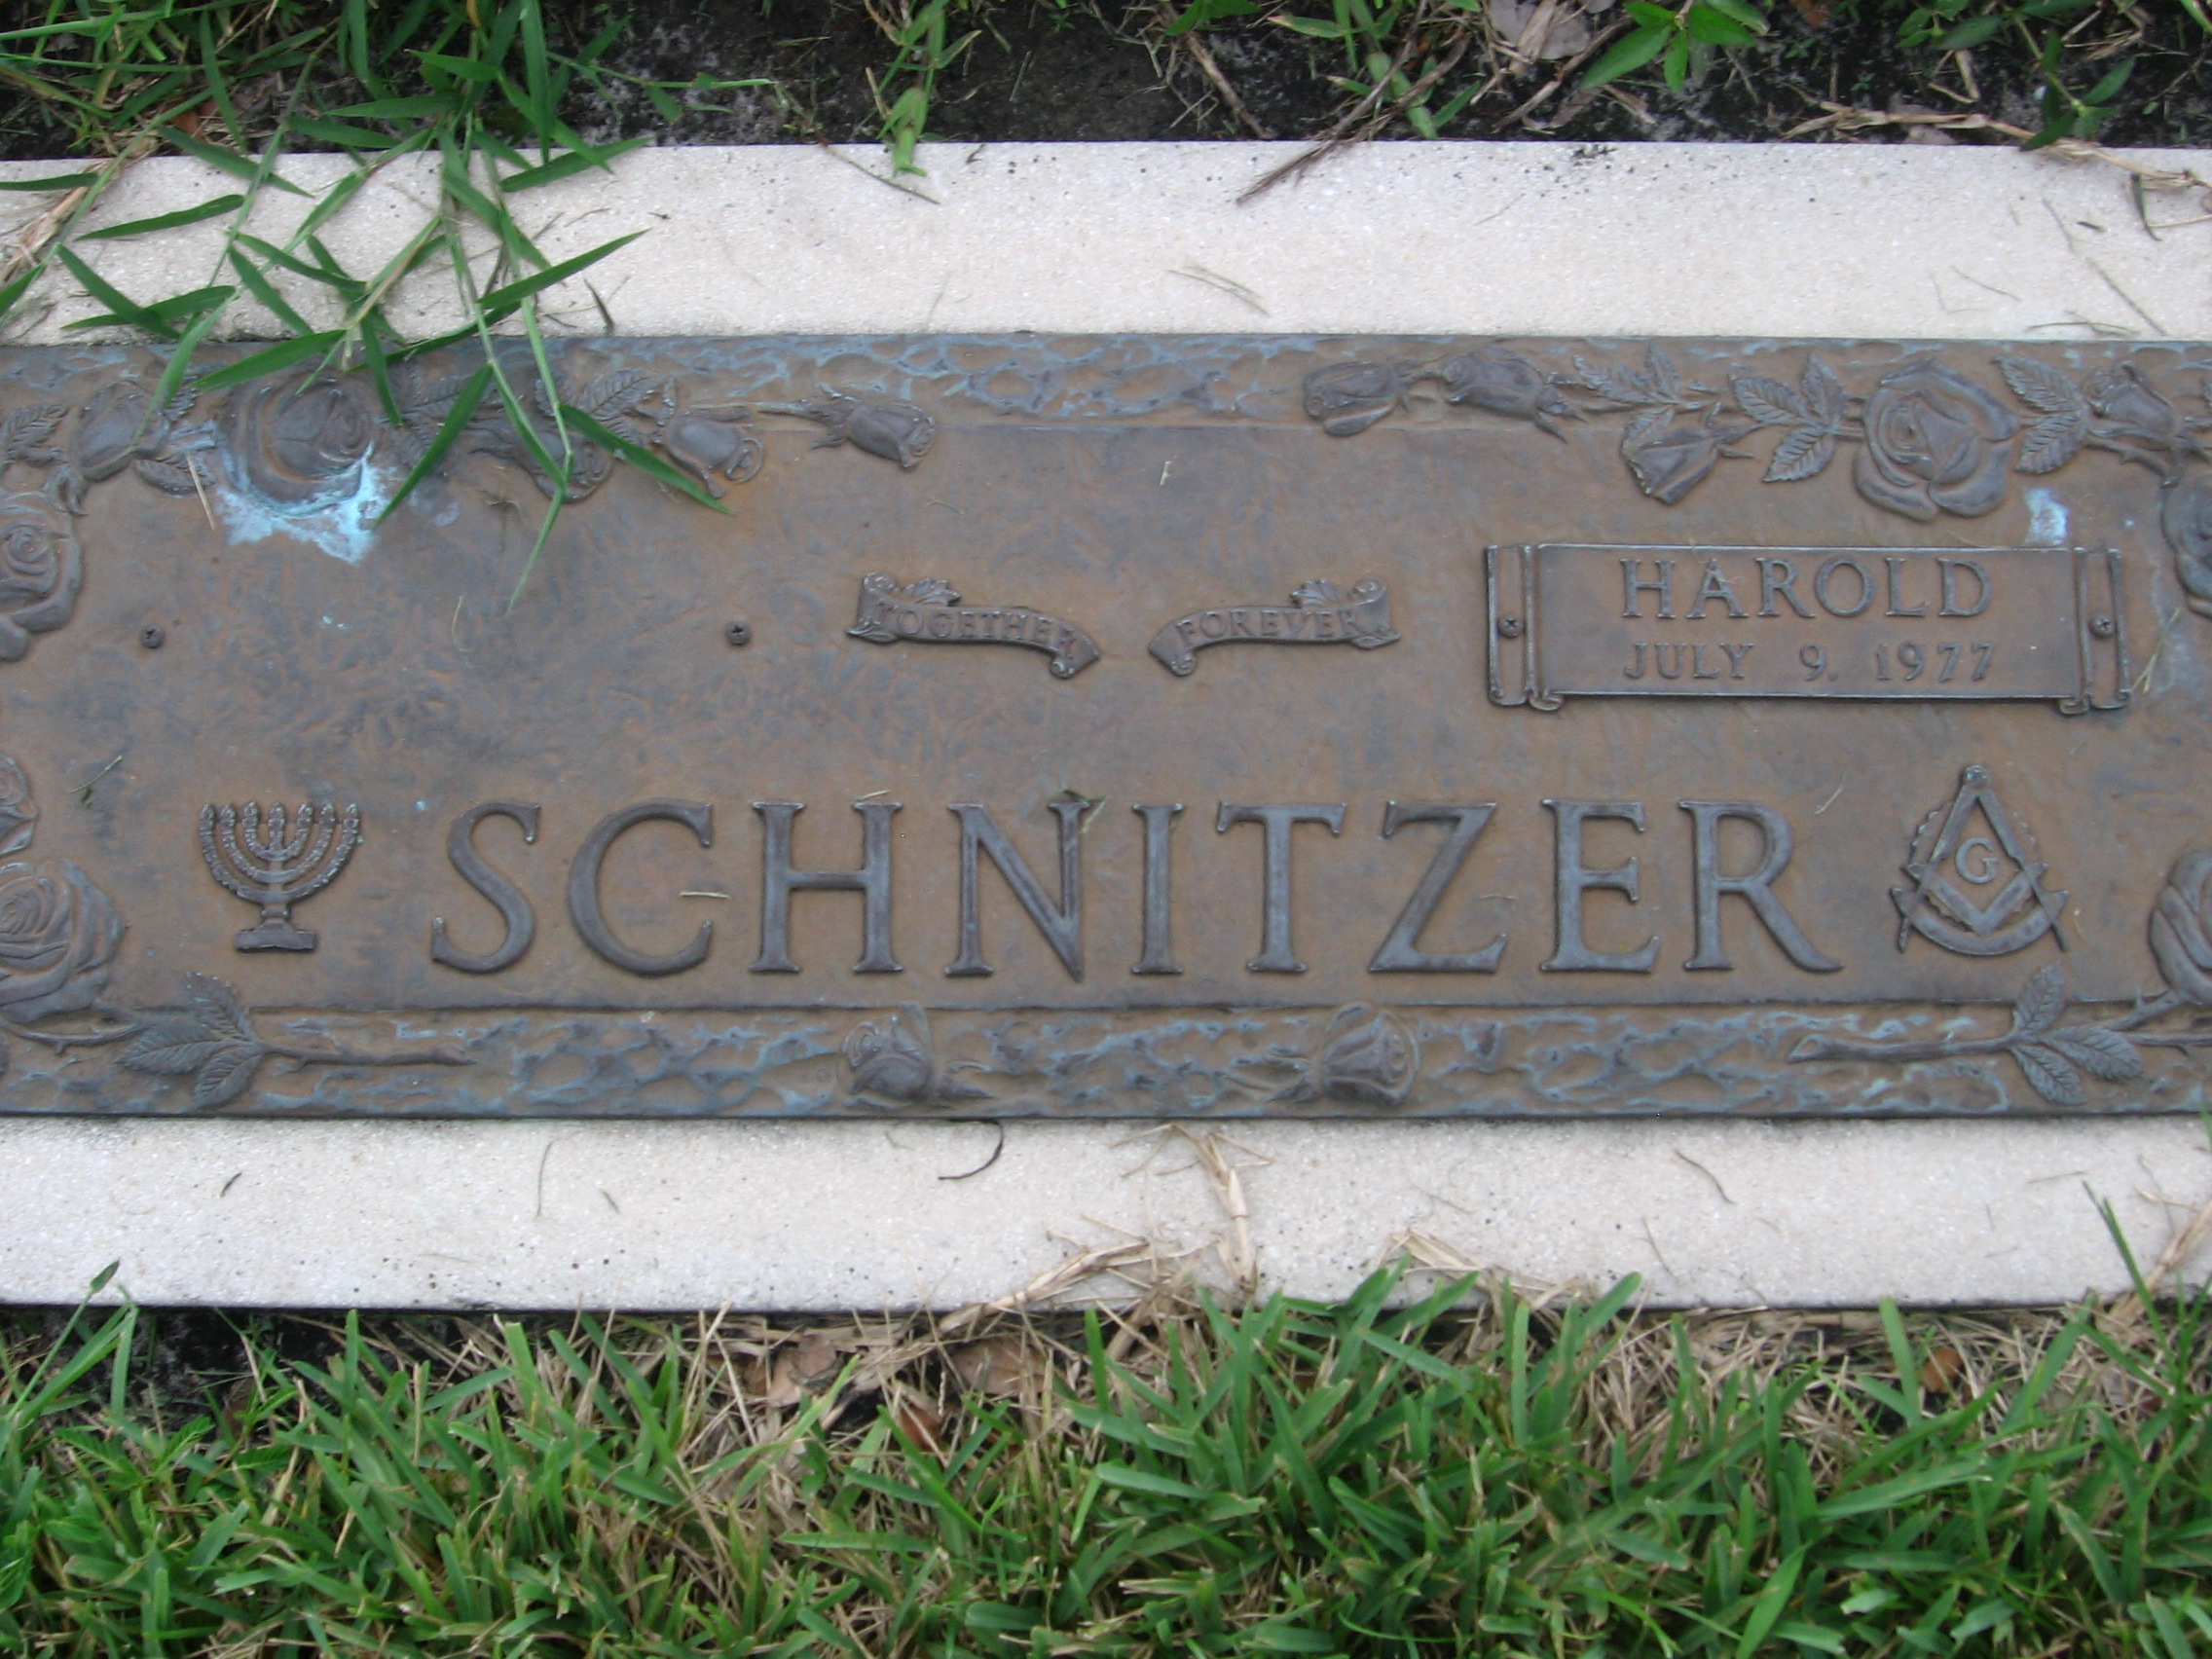 Harold Schnitzer